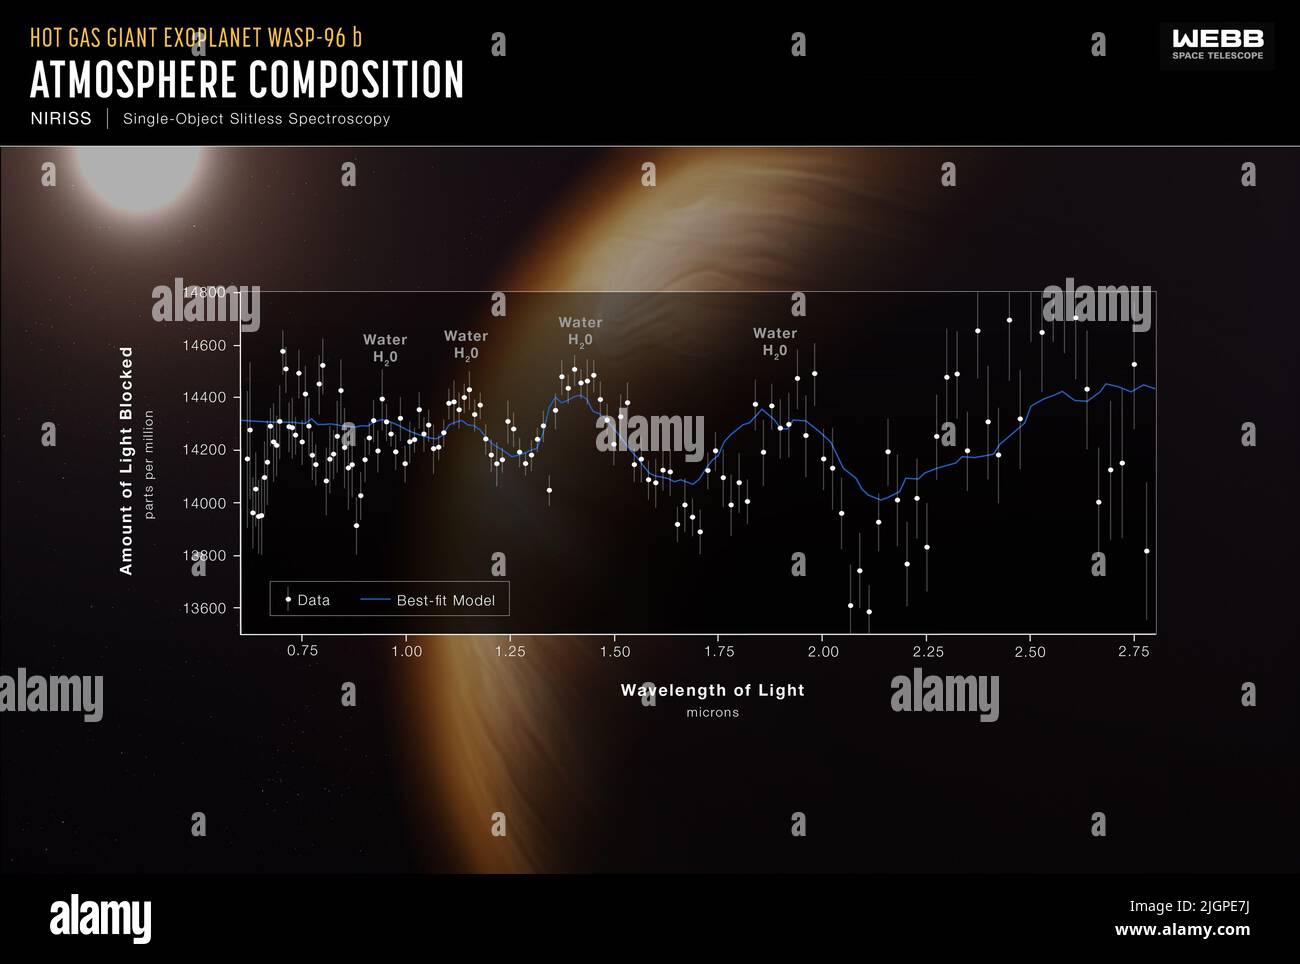 Le prime immagini di James Webb Space Telescope. Il telescopio ha catturato lo spettro più dettagliato di un'atmosfera exoplanet fino ad oggi, rivelando la firma inequivocabile dell'acqua, le indicazioni di foschia, e le prove per le nuvole che si pensavano non esistessero sulla base di osservazioni precedenti. L'exoplanet è a più di 1000 anni luce di distanza. Lo spettro di trasmissione del gigante del gas caldo WASP-96 b, realizzato utilizzando la termocamera Near-Infrared di Webb e lo spettrografo Slitless, fornisce solo uno sguardo al brillante futuro della ricerca exoplanet con Webb. 12 luglio 2022 credito: NASA, ESA, CSA e STSci / Alamy Live News Foto Stock